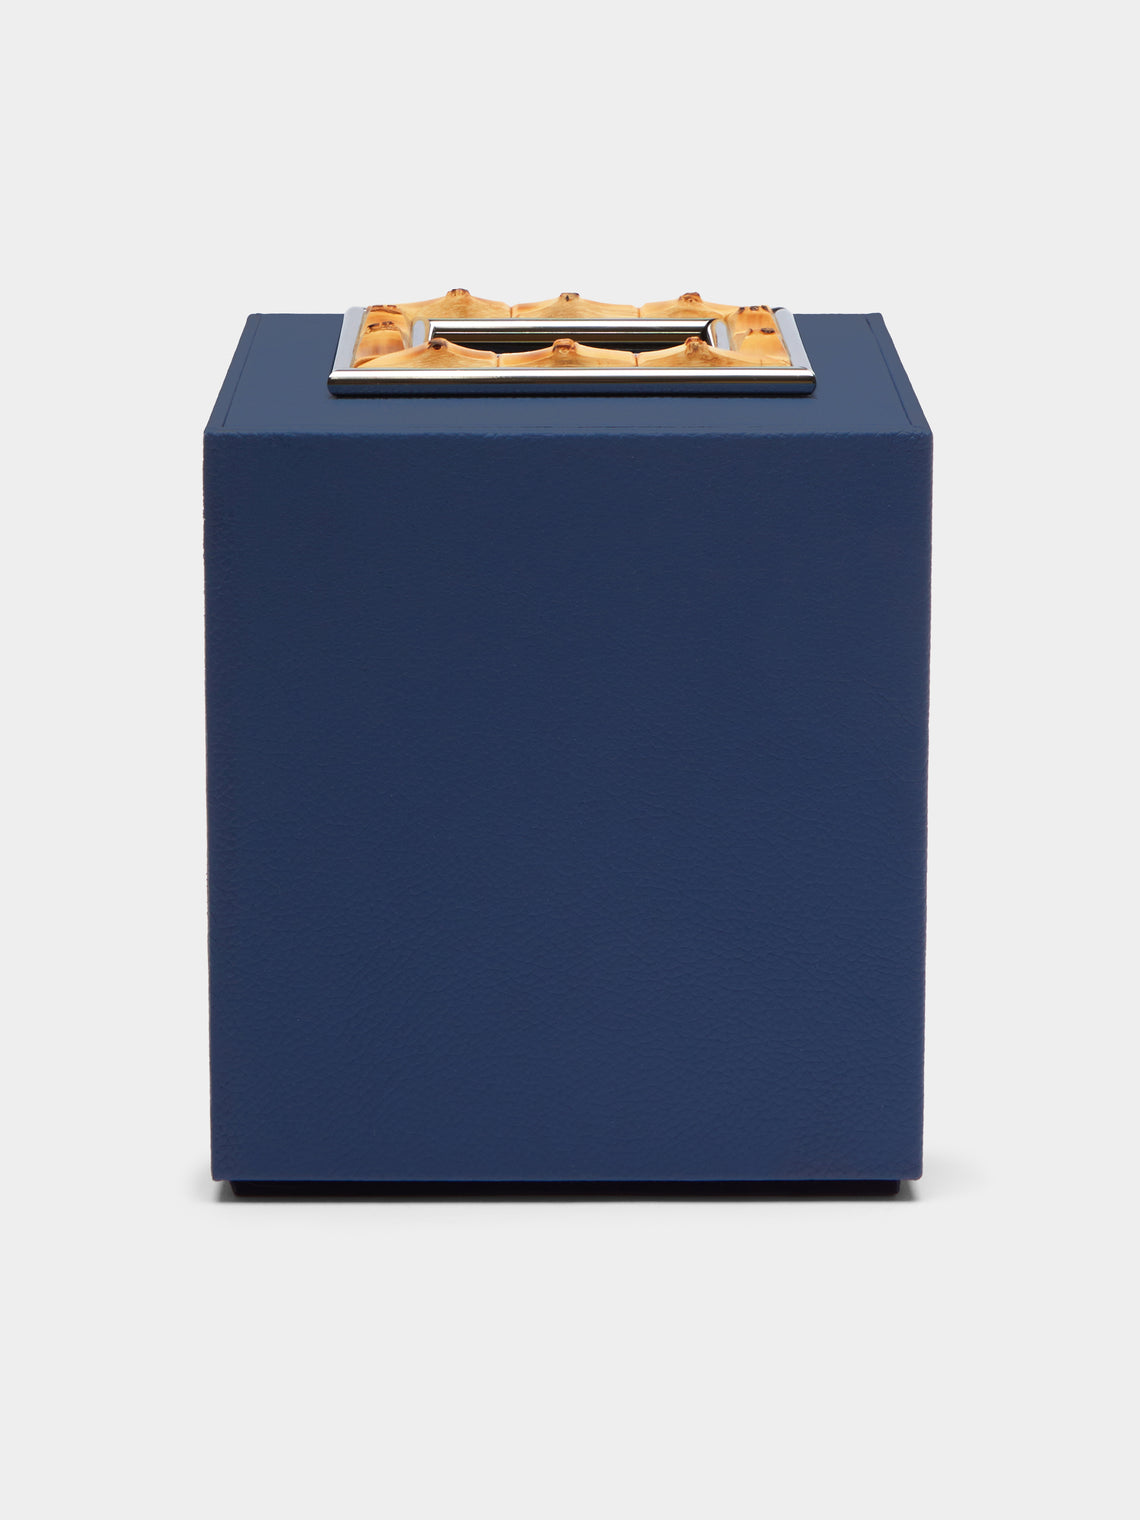 Lorenzi Milano - Leather and Bamboo Tissue Box - Blue - ABASK - 